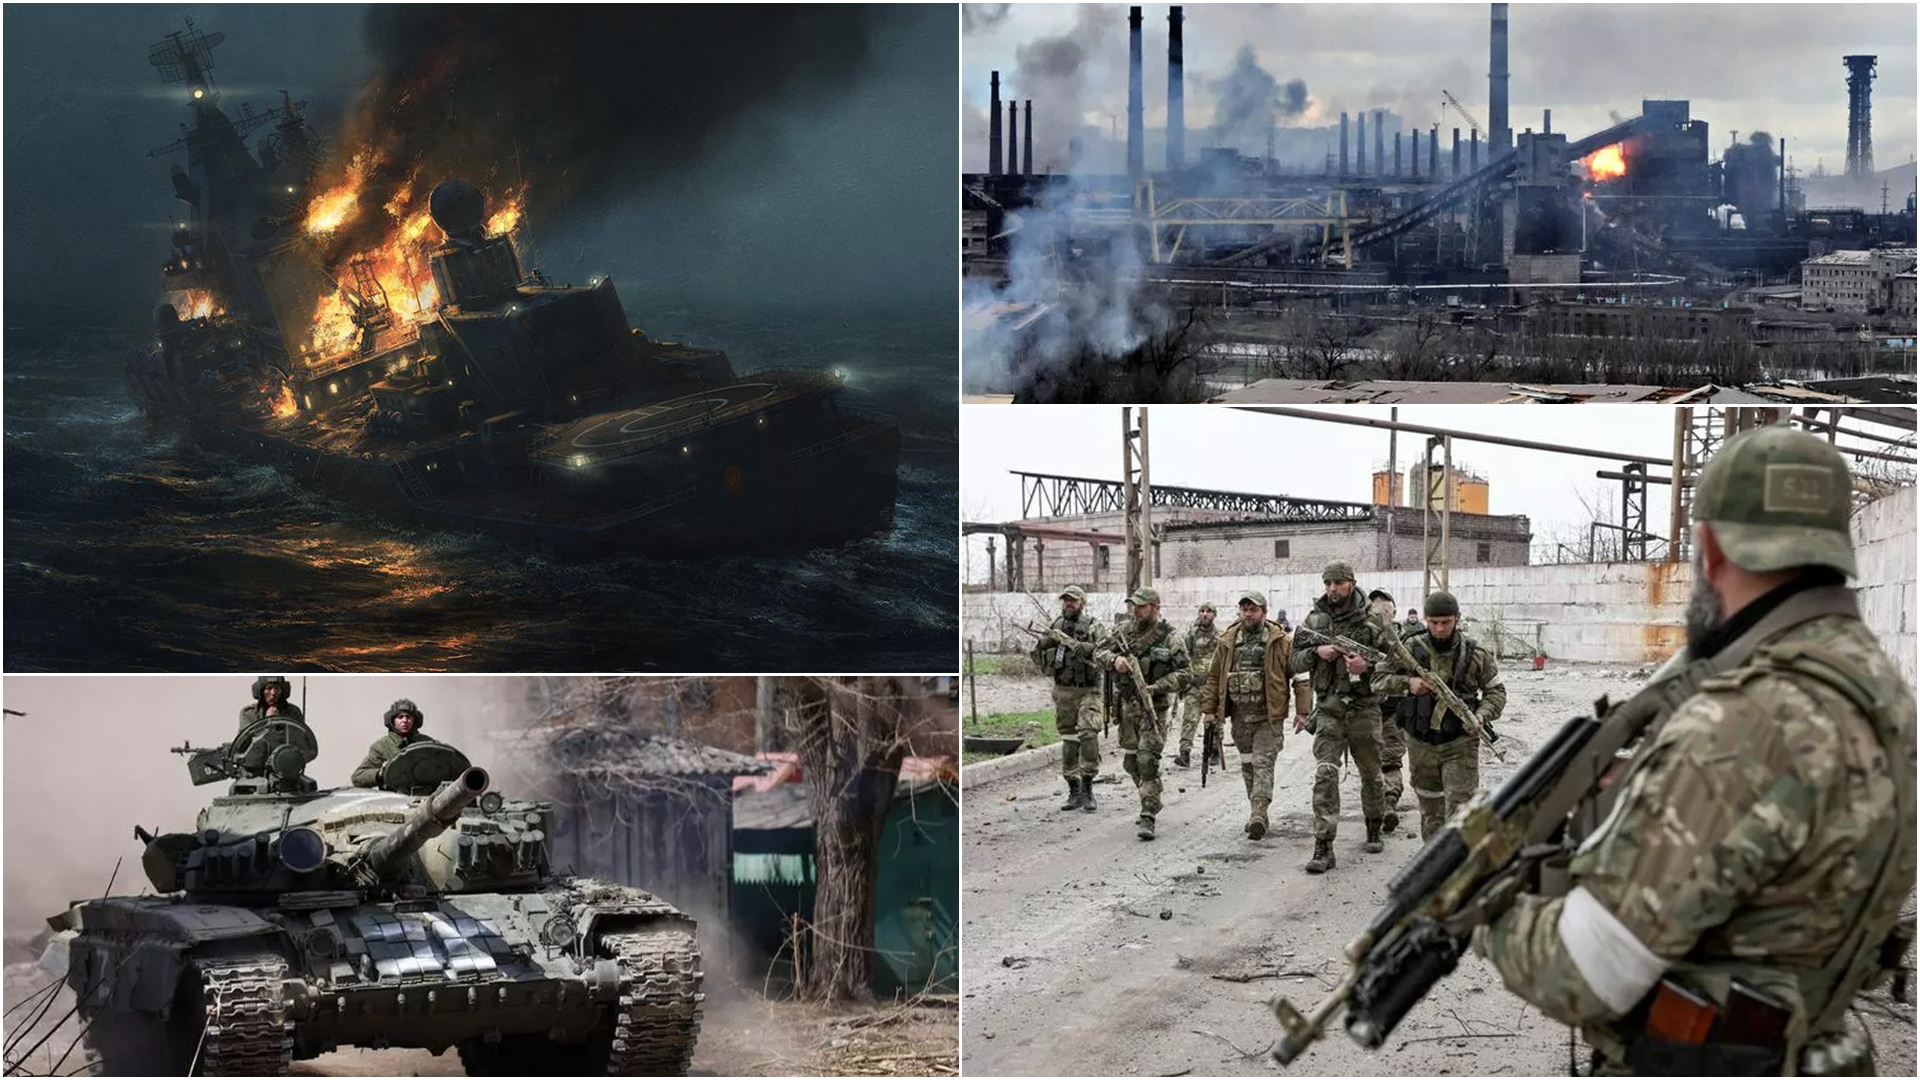 LIVE Război în Ucraina, ziua 93: Harkovul rămâne sub bombardamente, numărându-și morții, printre care și copii / Doar 5% din Luhansk a mai rămas în mâinile ucrainenilor/ 8.000 de ucraineni sunt prizonieri de război în autoproclamatele republici Luhansk și Donețk